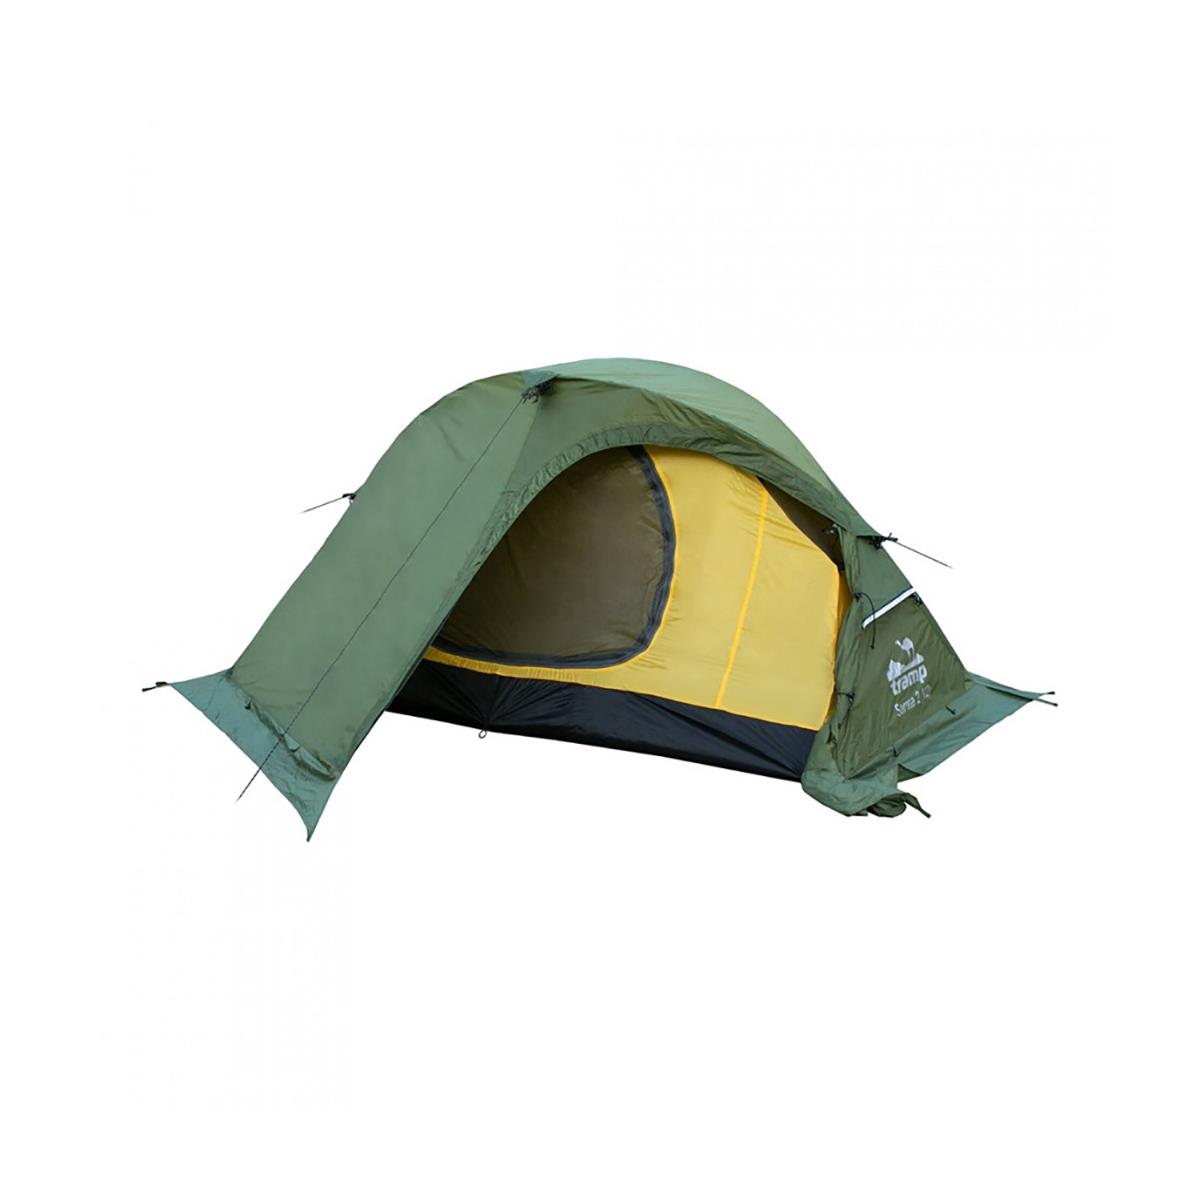 Походная палатка SARMA 2 V2 зеленый (TRT-30) Tramp походная палатка sarma 2 v2 зеленый trt 30 tramp